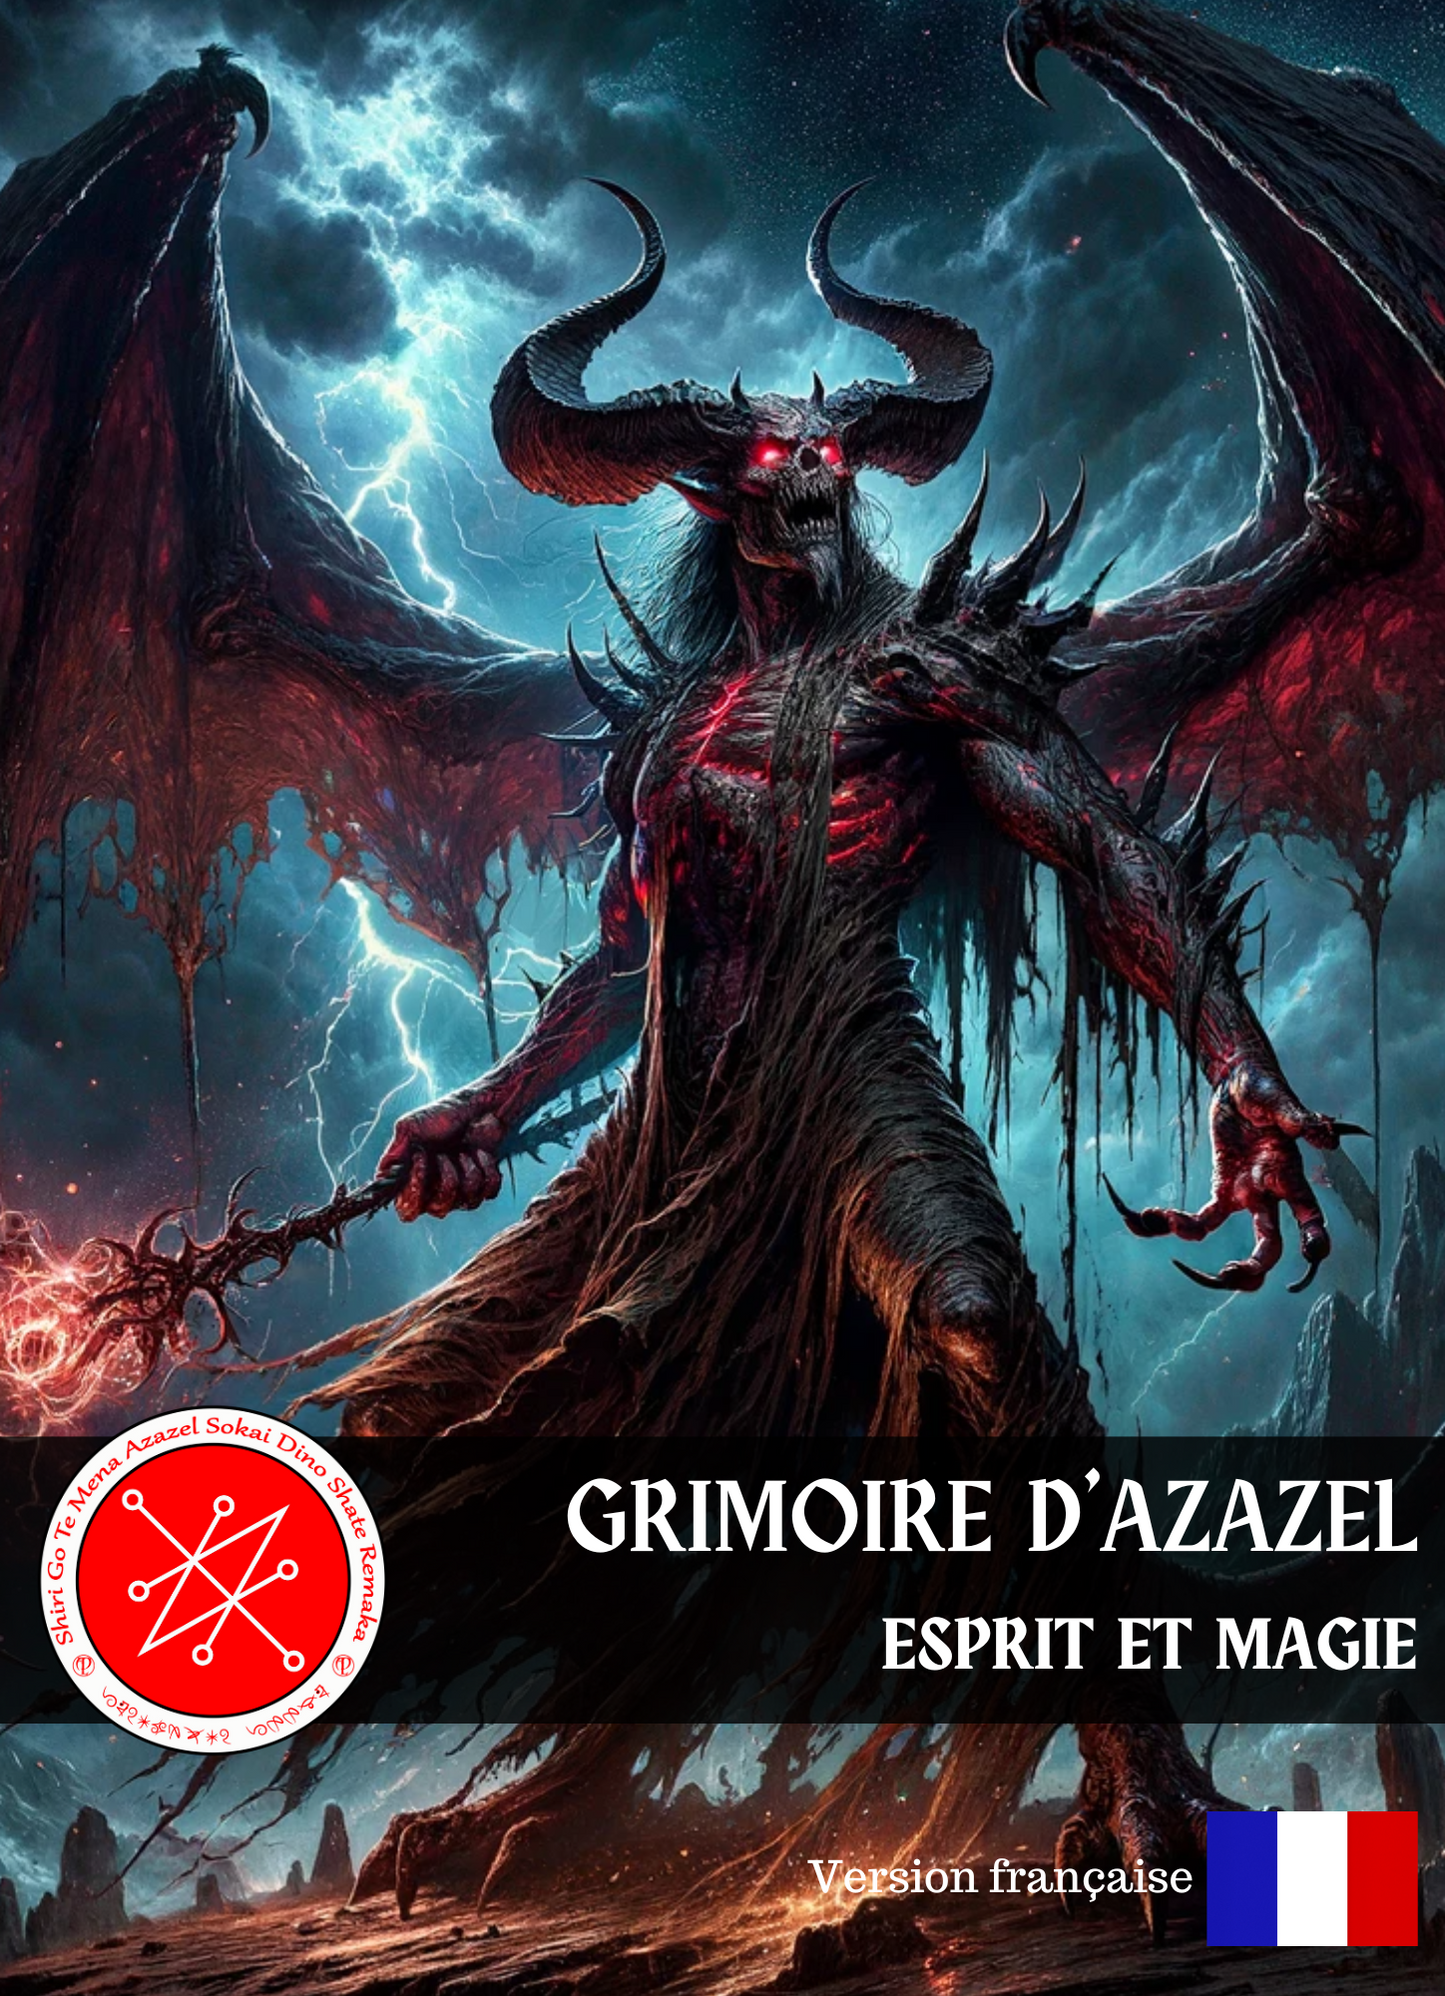 Grimoire of AZAZEL Spells & Rituals for at fjerne giftige energier, blokeringer og for at styrke dig selv - Abraxas Amulets ® Magic ♾️ Talismaner ♾️ Indvielser